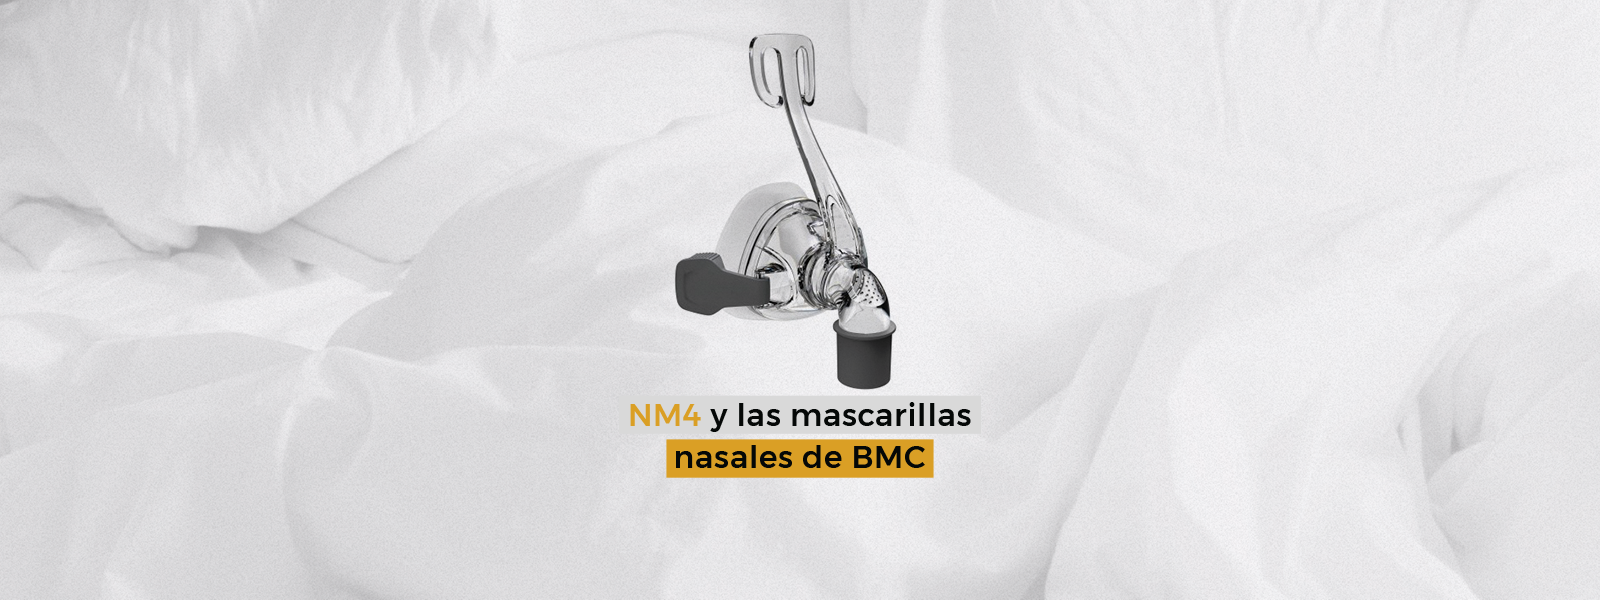 NM4 y las mascarillas nasales de BMC